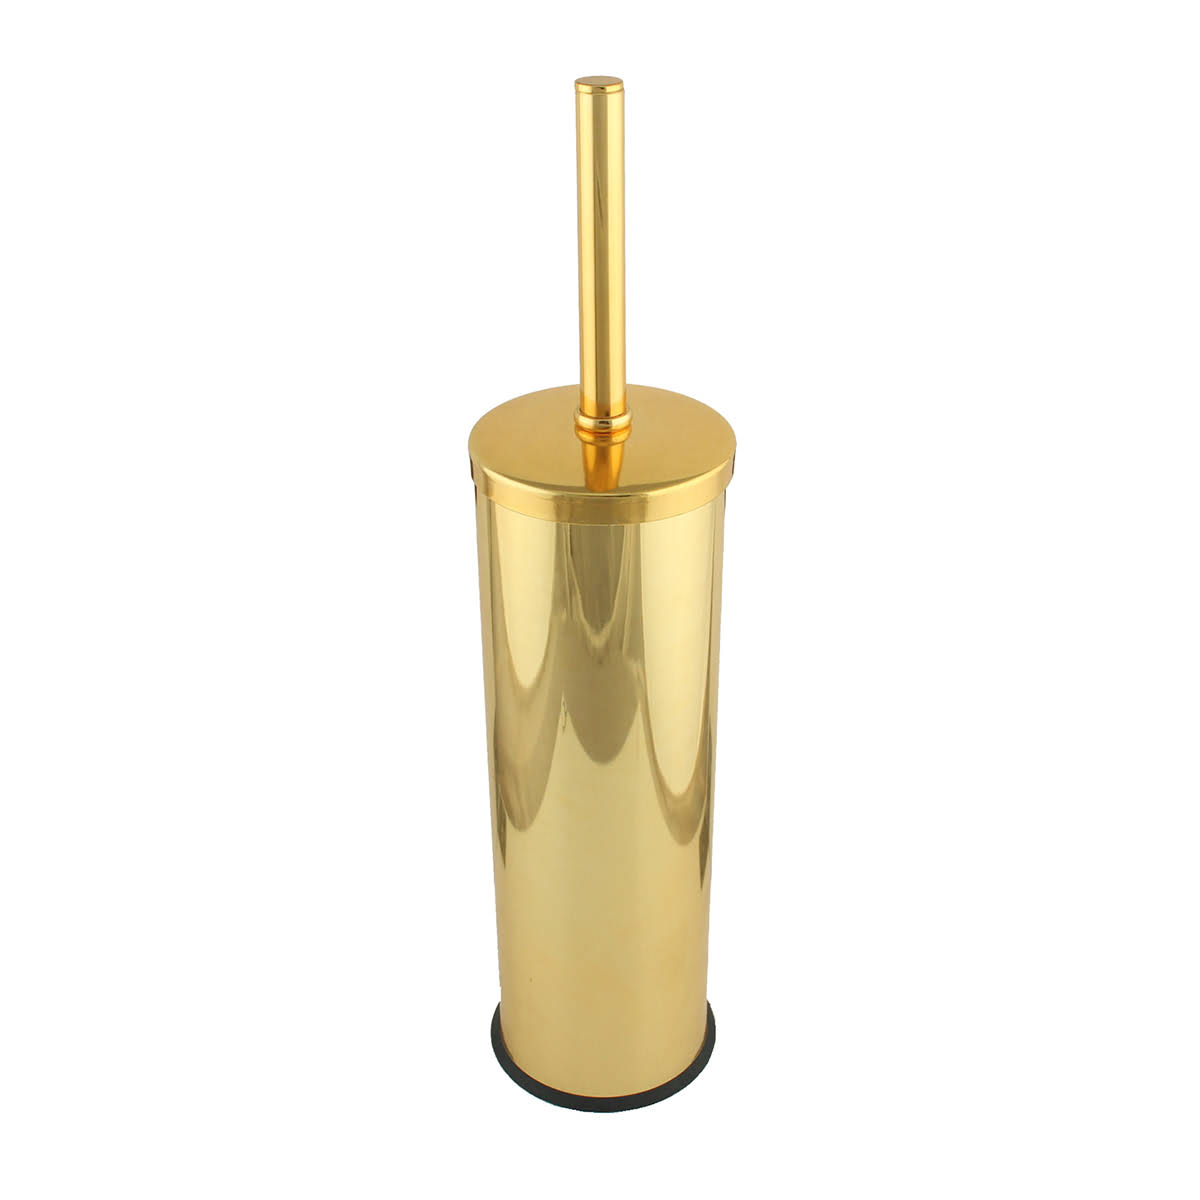 FKN Papatya Altın Klozet Fırçası Yüzey Rengi: Altın Kolay temizlenebilir. PASLANMAZ 2 Yıl Garanti ISO 9001:2008 Kalite Yönetim sistemi. MADE IN TURKEY Ürün Ölçüleri Ürün yüksekliği (A): 40 cm  Ürün genişliği (B): 8 cm